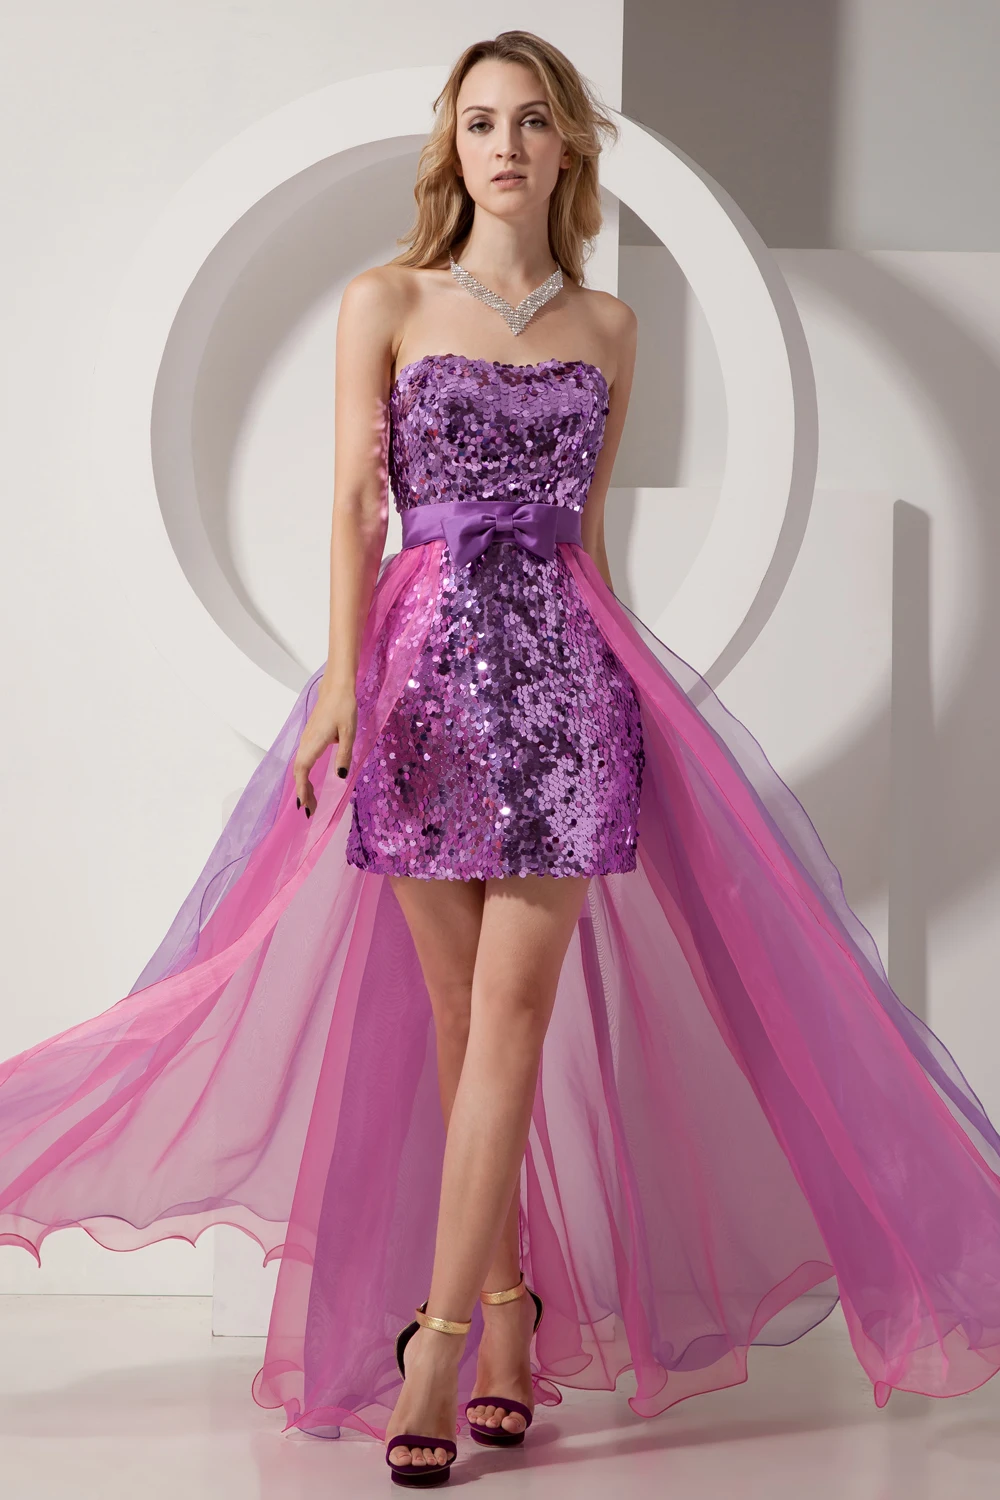 Красивое короткое коктейльное платье с блестками и блестками, нарядное платье лавандового цвета для вечерней вечеринки, торжественное платье, халат de soiree